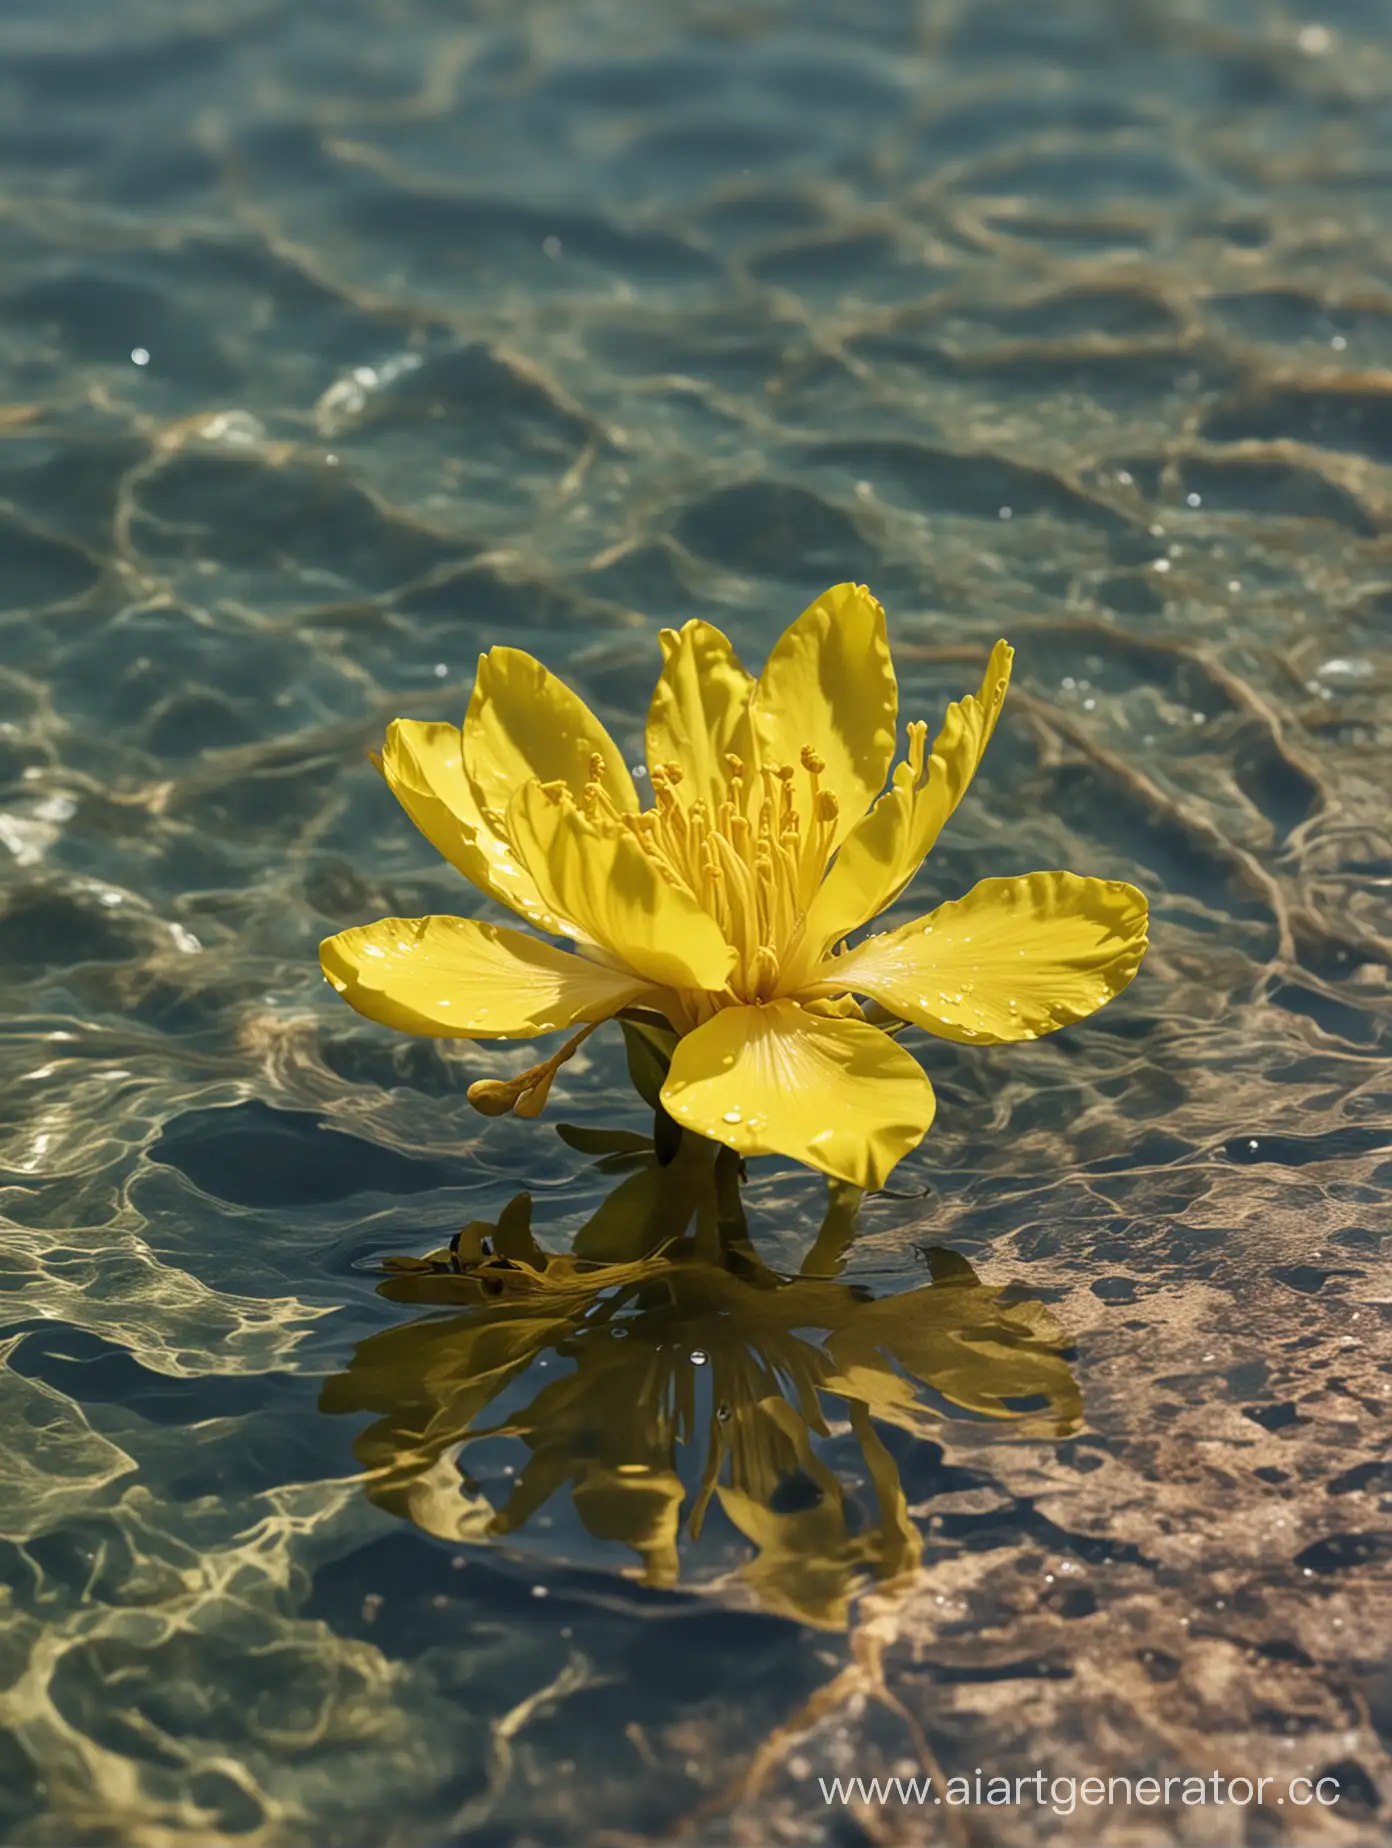 Acacia-Yellow-Flower-CloseUp-8K-Afloat-in-Serene-Water